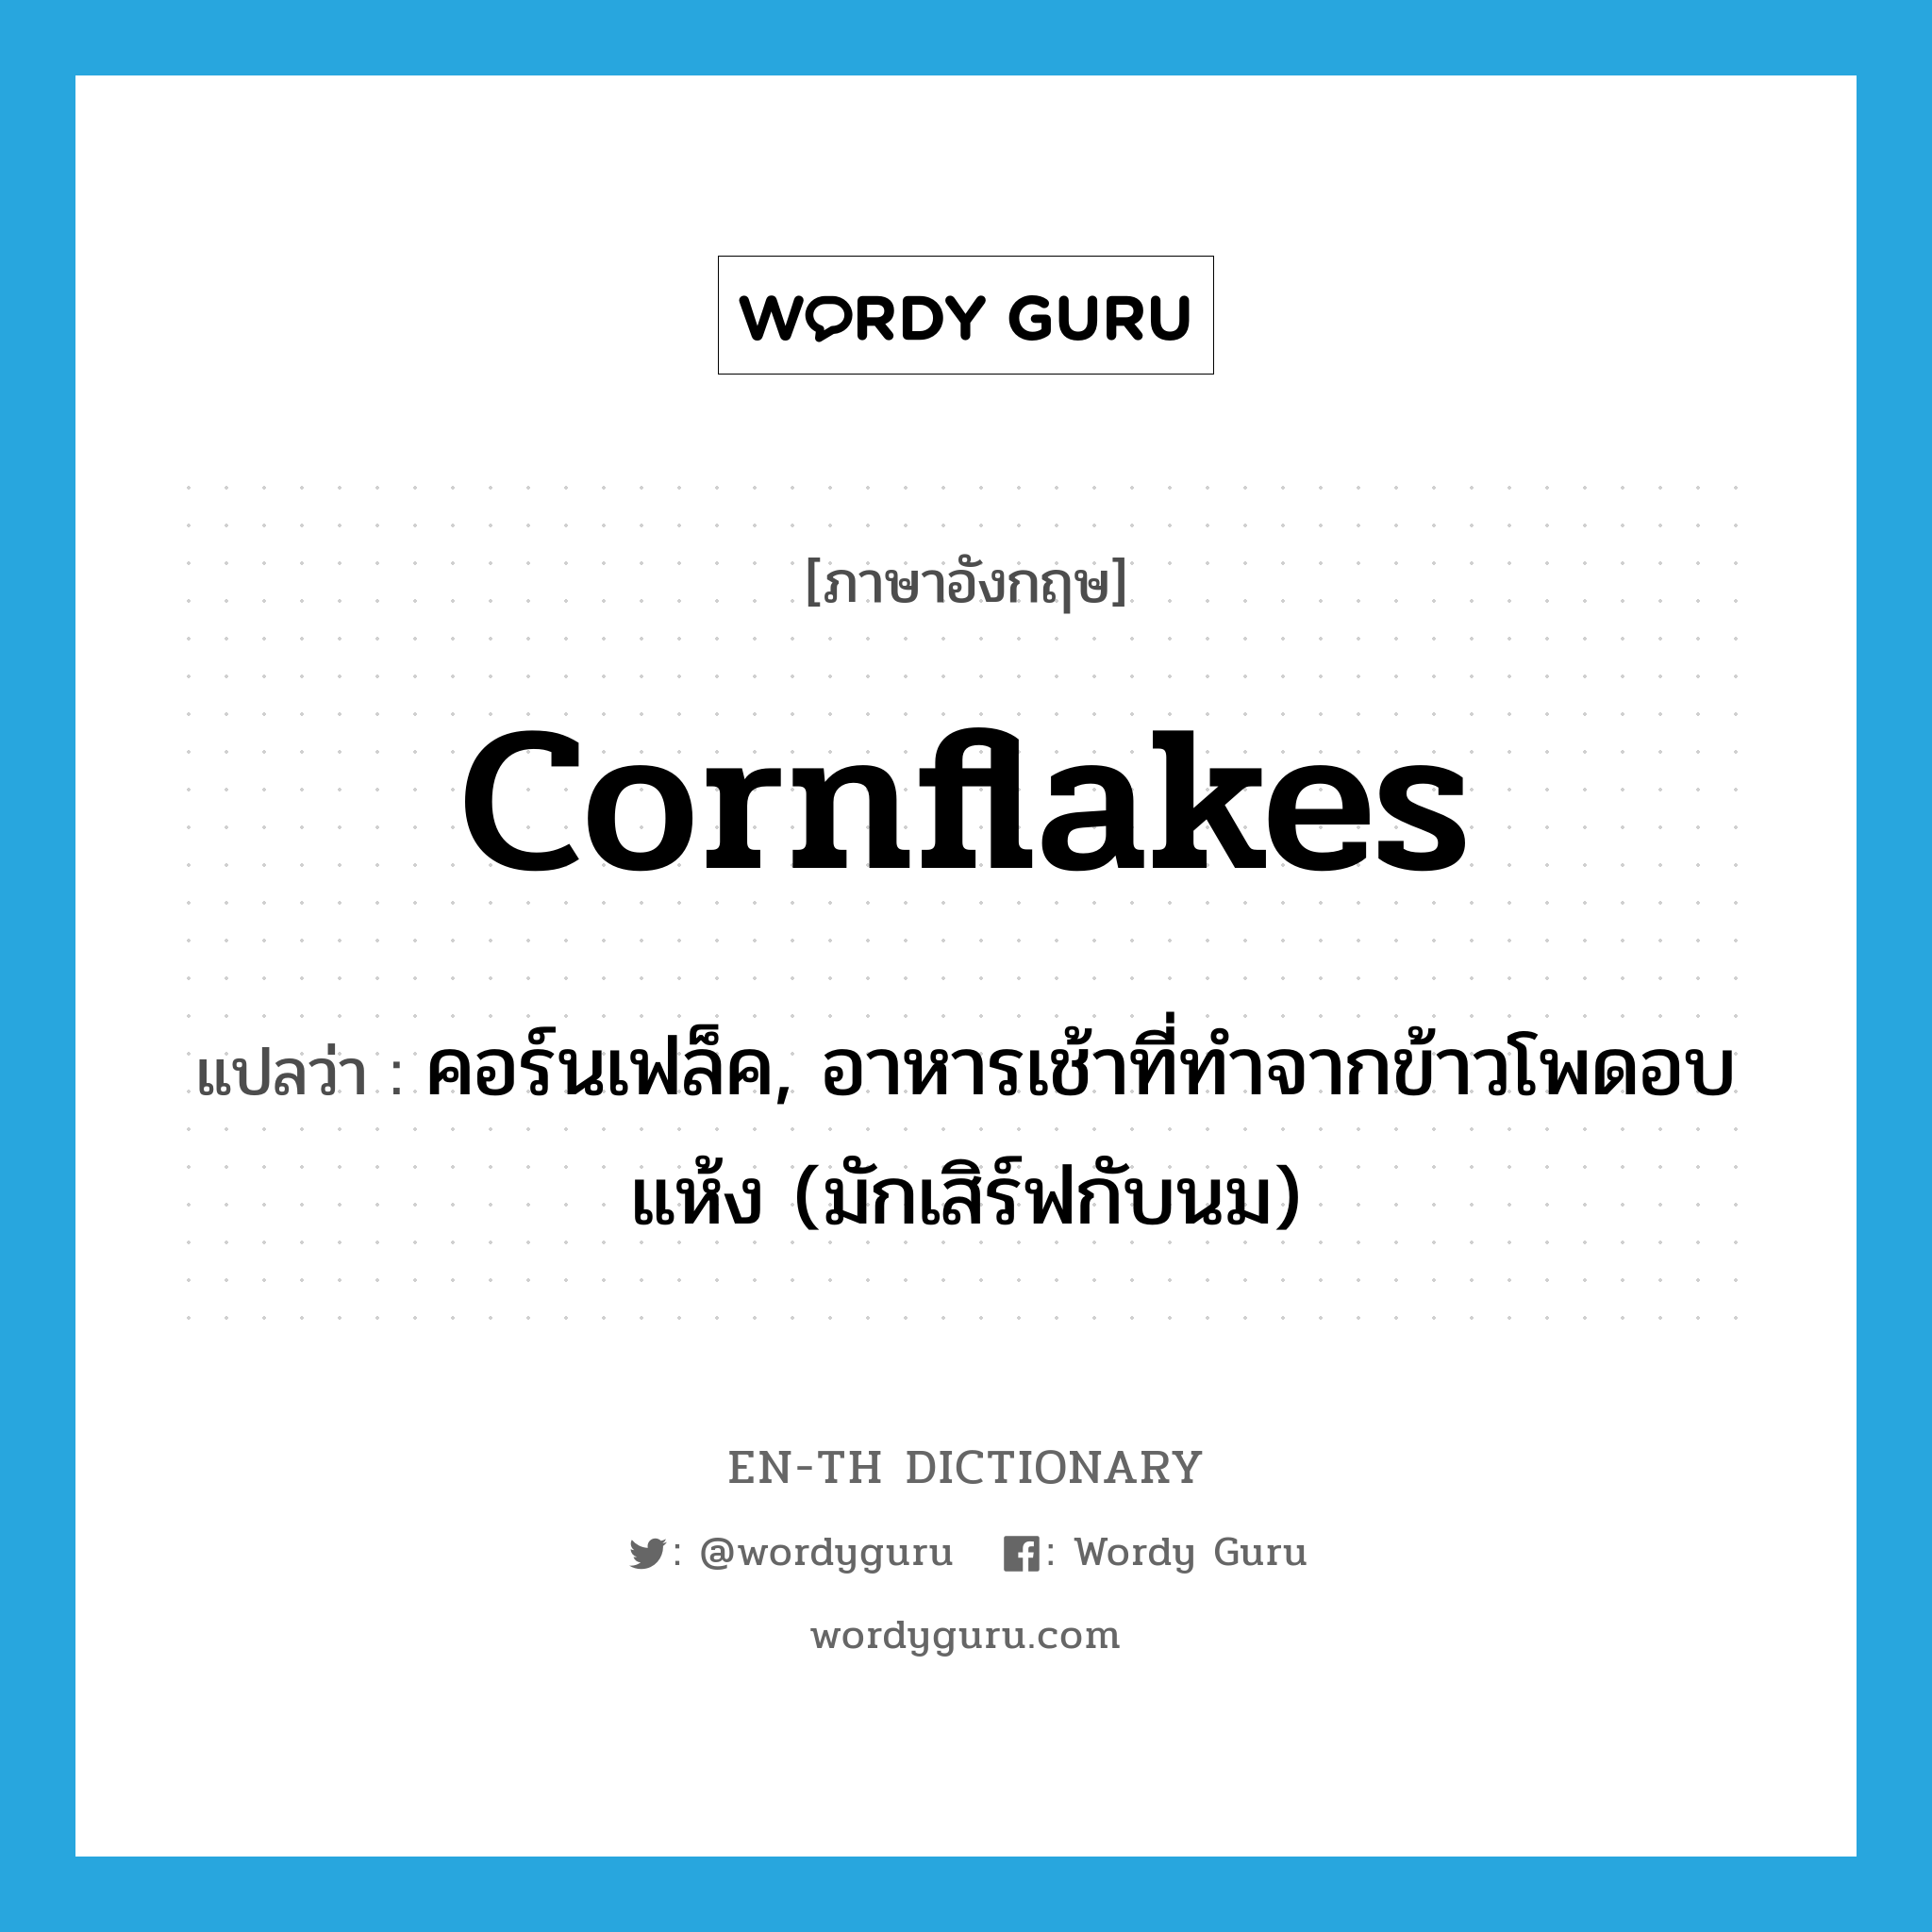 คอร์นเฟล็ค, อาหารเช้าที่ทำจากข้าวโพดอบแห้ง (มักเสิร์ฟกับนม) ภาษาอังกฤษ?, คำศัพท์ภาษาอังกฤษ คอร์นเฟล็ค, อาหารเช้าที่ทำจากข้าวโพดอบแห้ง (มักเสิร์ฟกับนม) แปลว่า cornflakes ประเภท N หมวด N